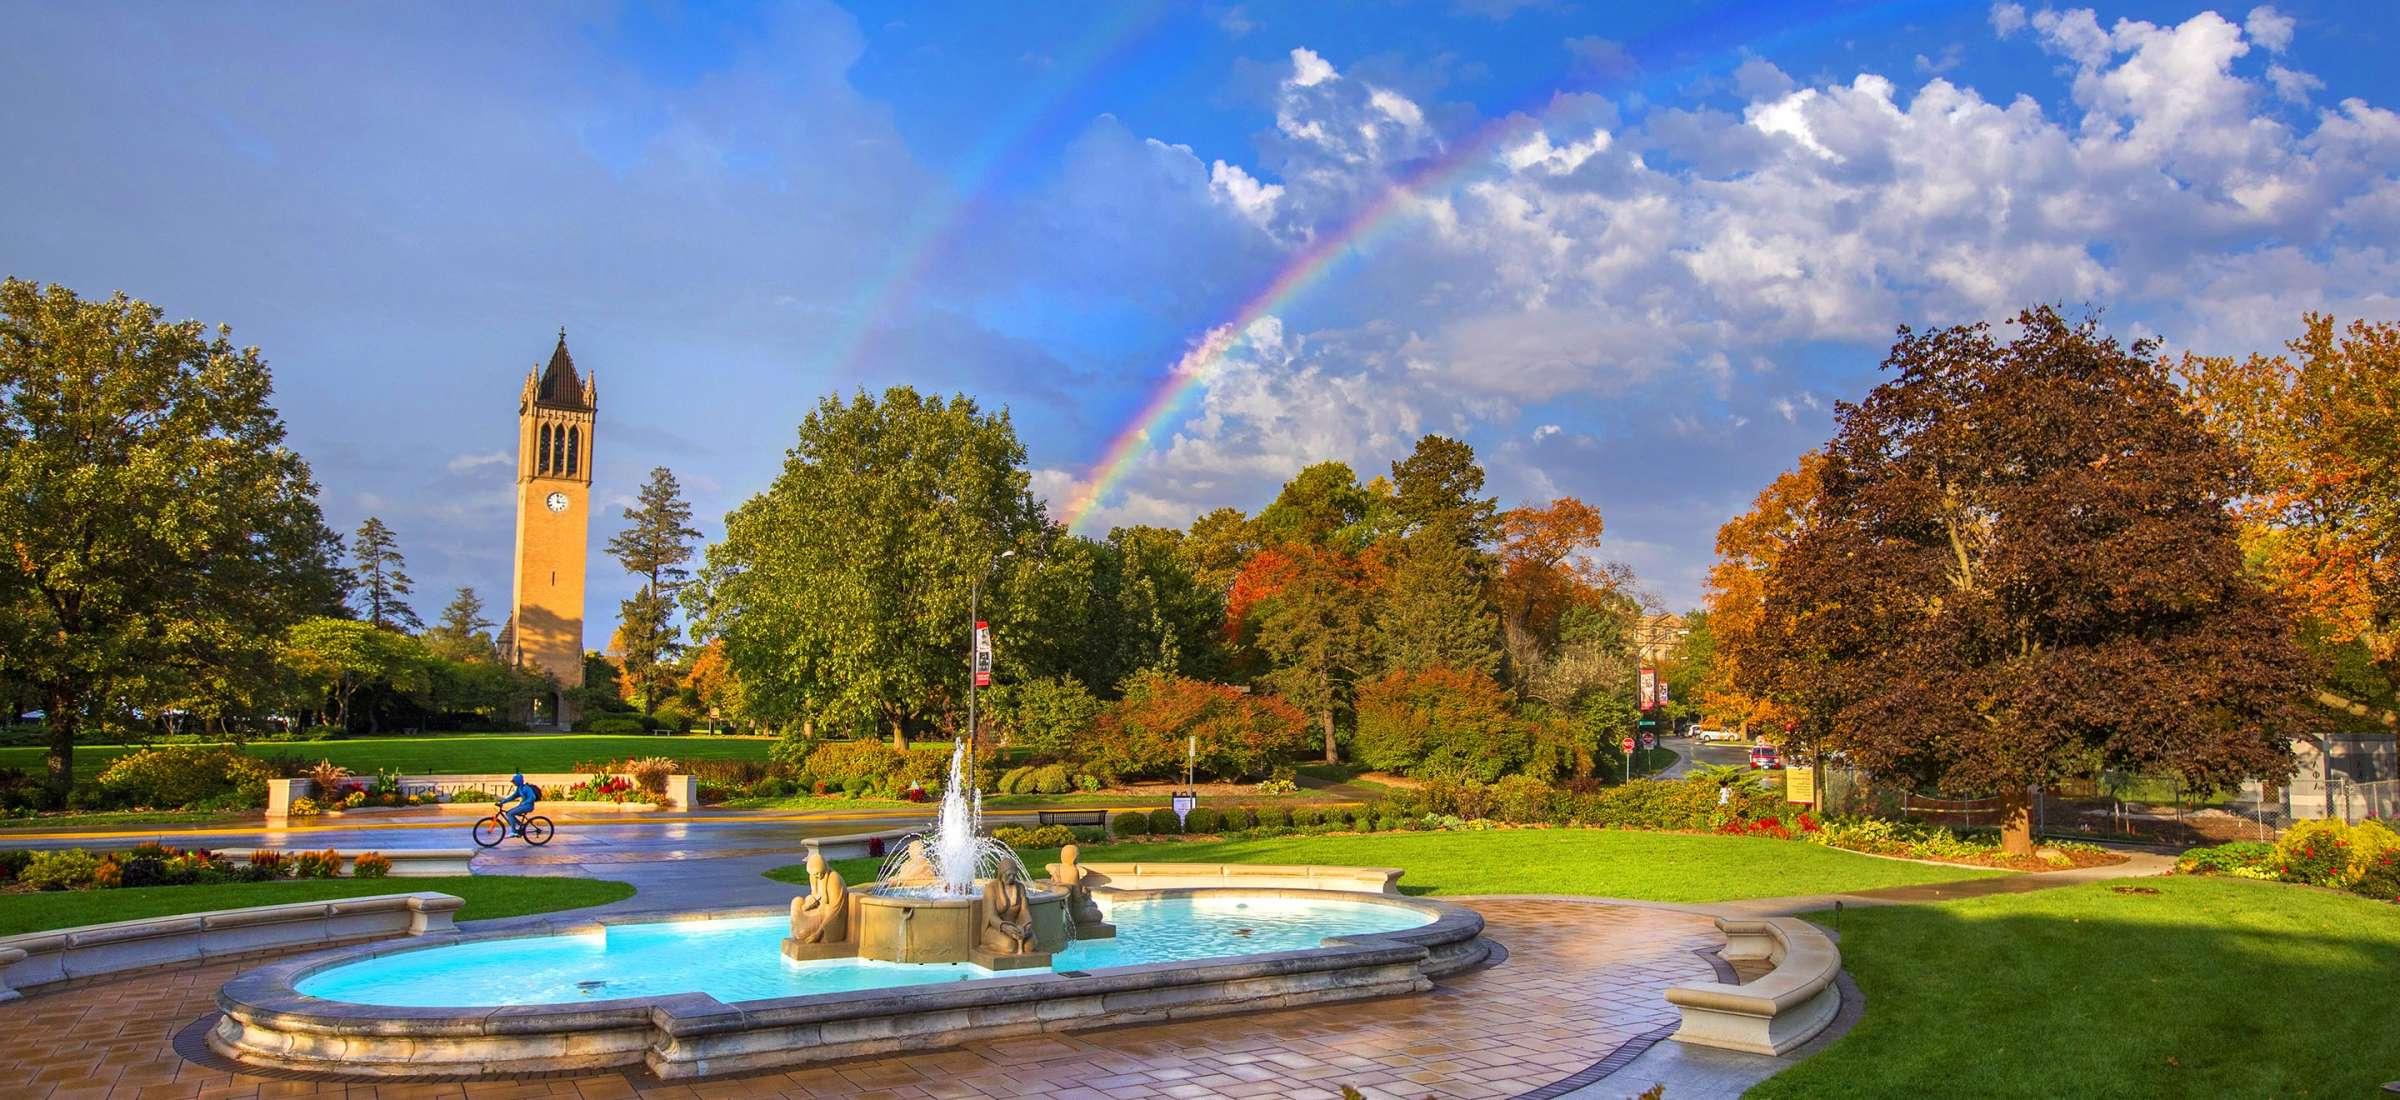 喷泉和钟楼的景色与双彩虹的背景